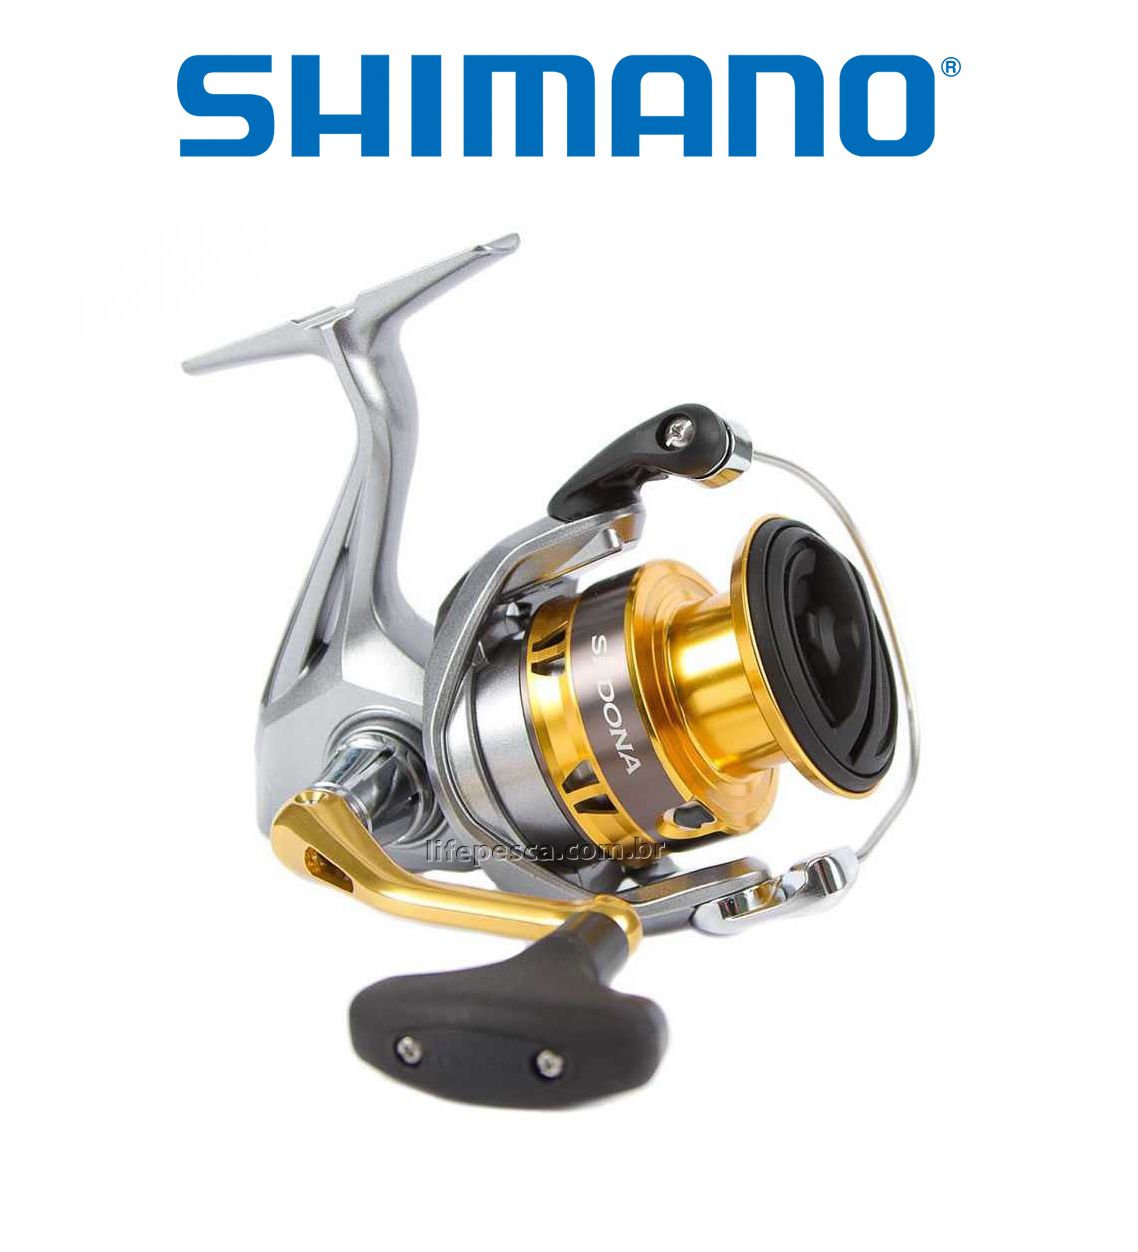 Molinete Shimano Sedona FI C5000 XG  - Life Pesca - Sua loja de Pesca, Camping e Lazer